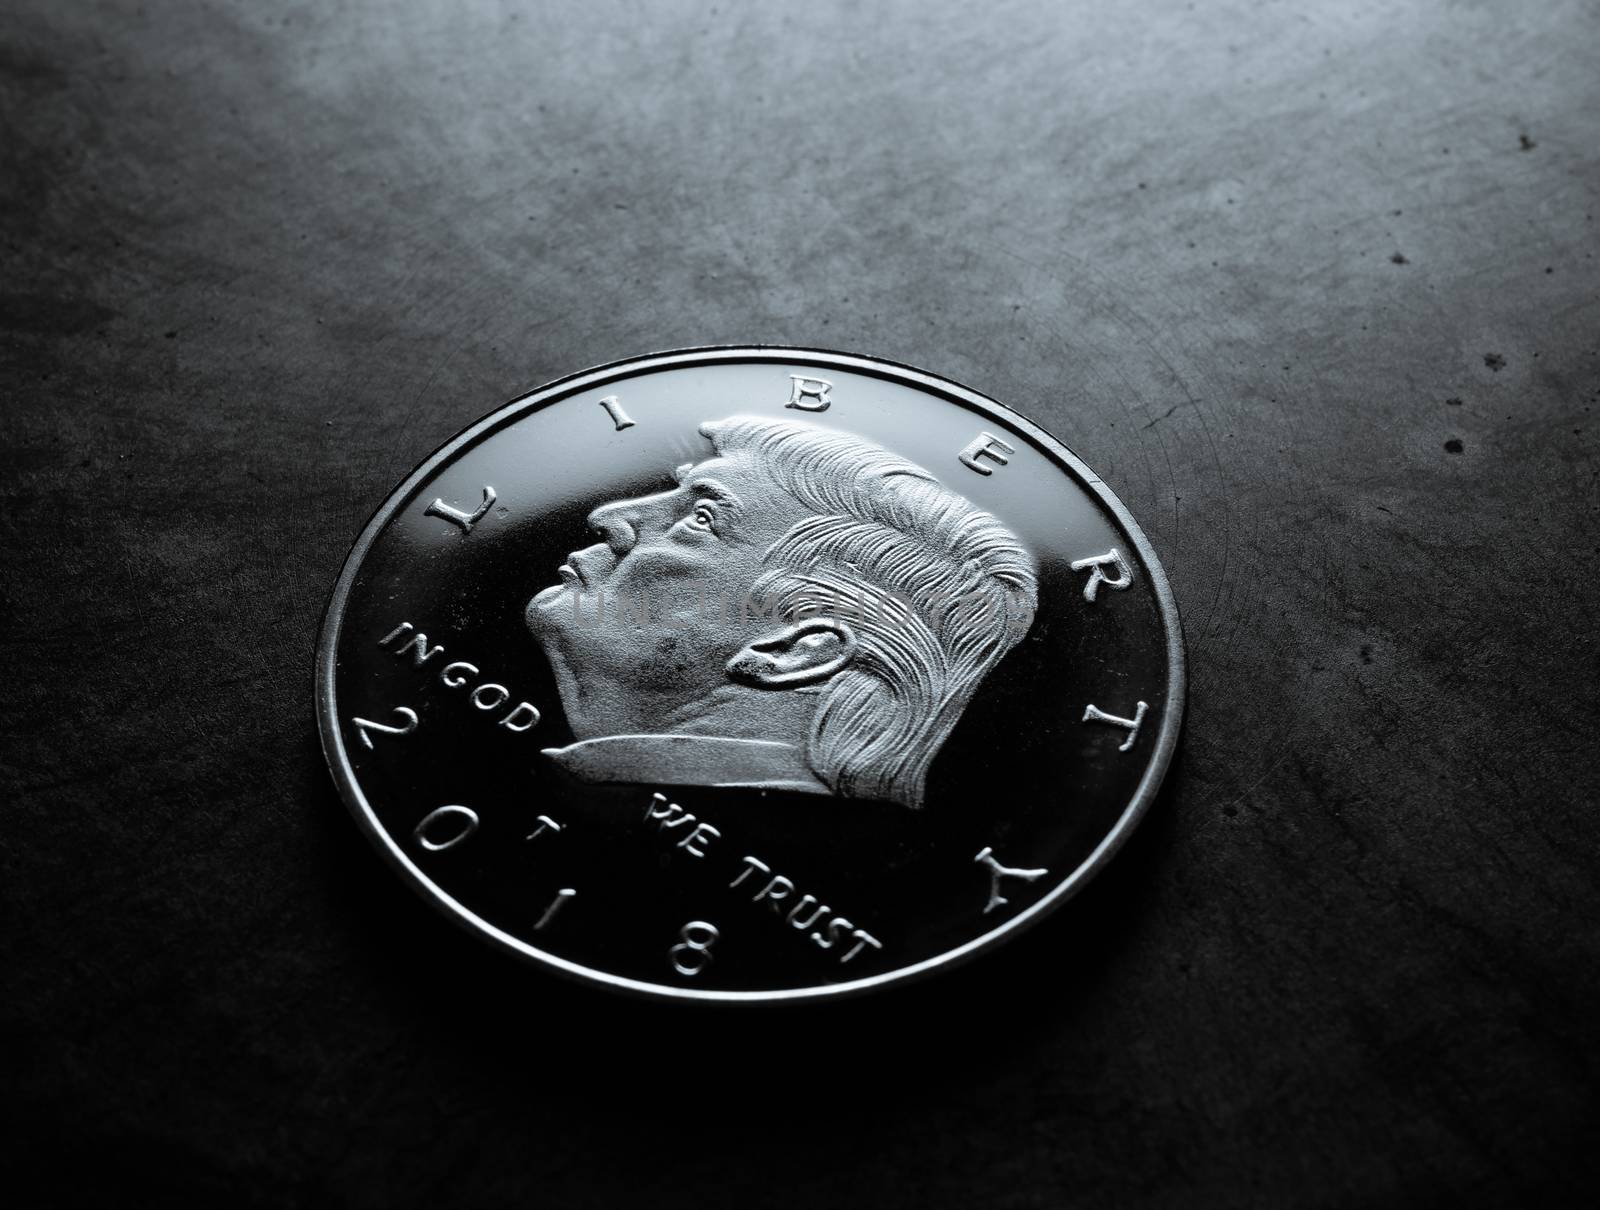 Donald Trump face on a coin macro shot